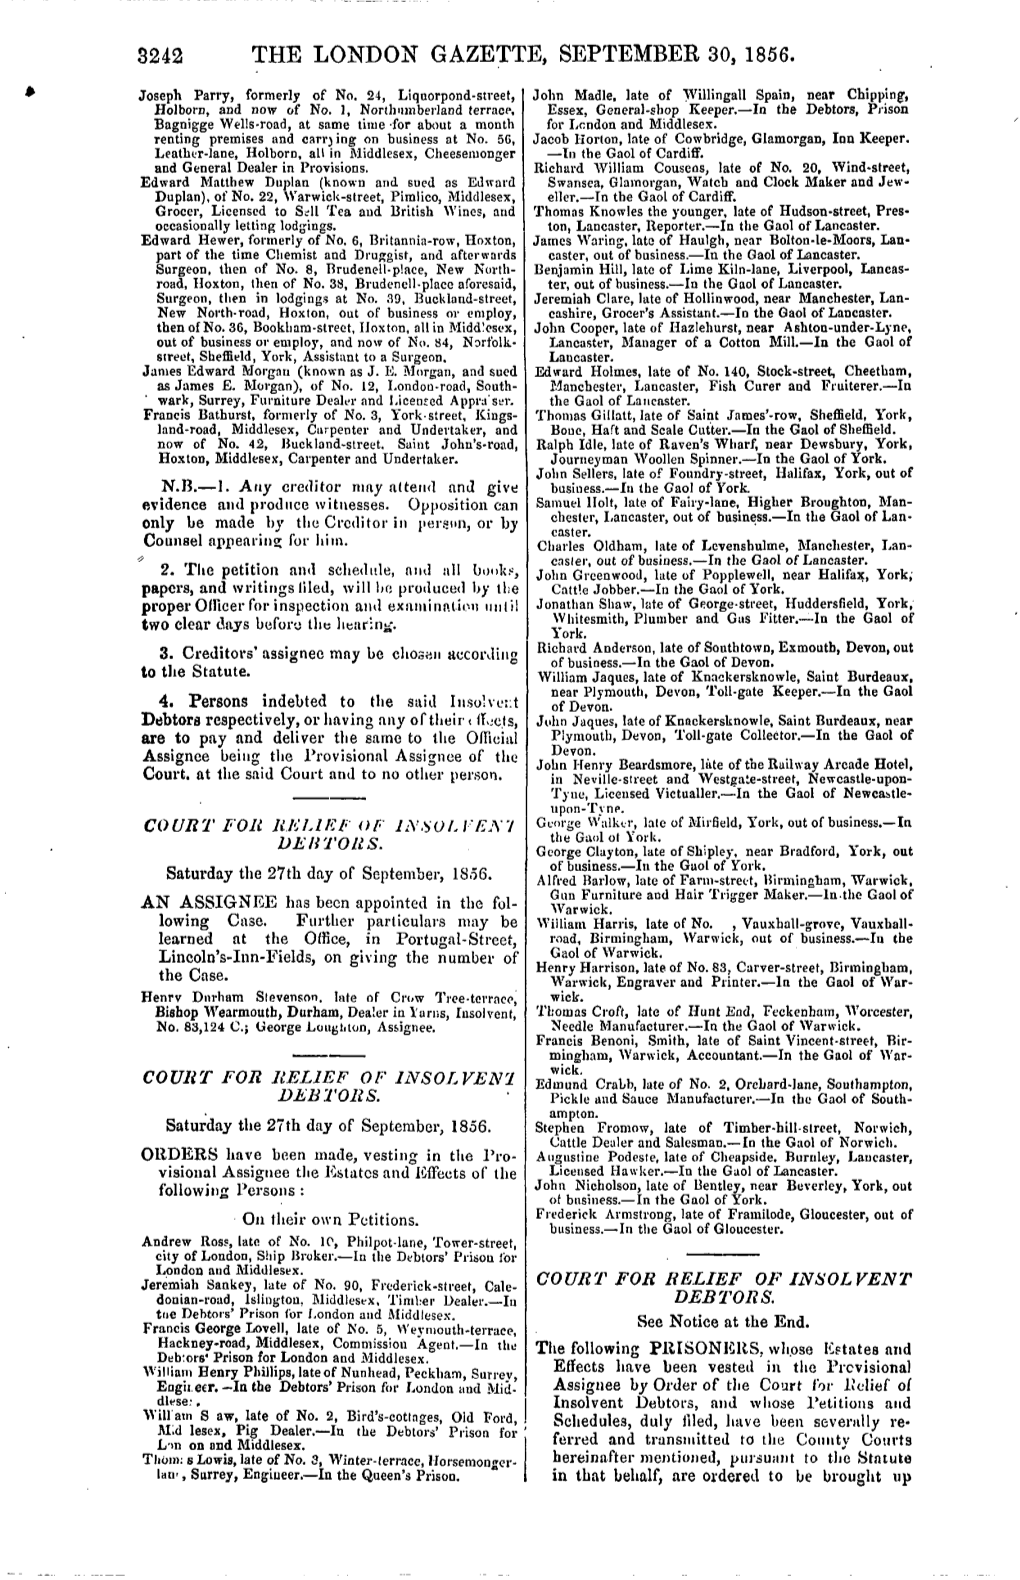 The London Gazette, September 30, 1856